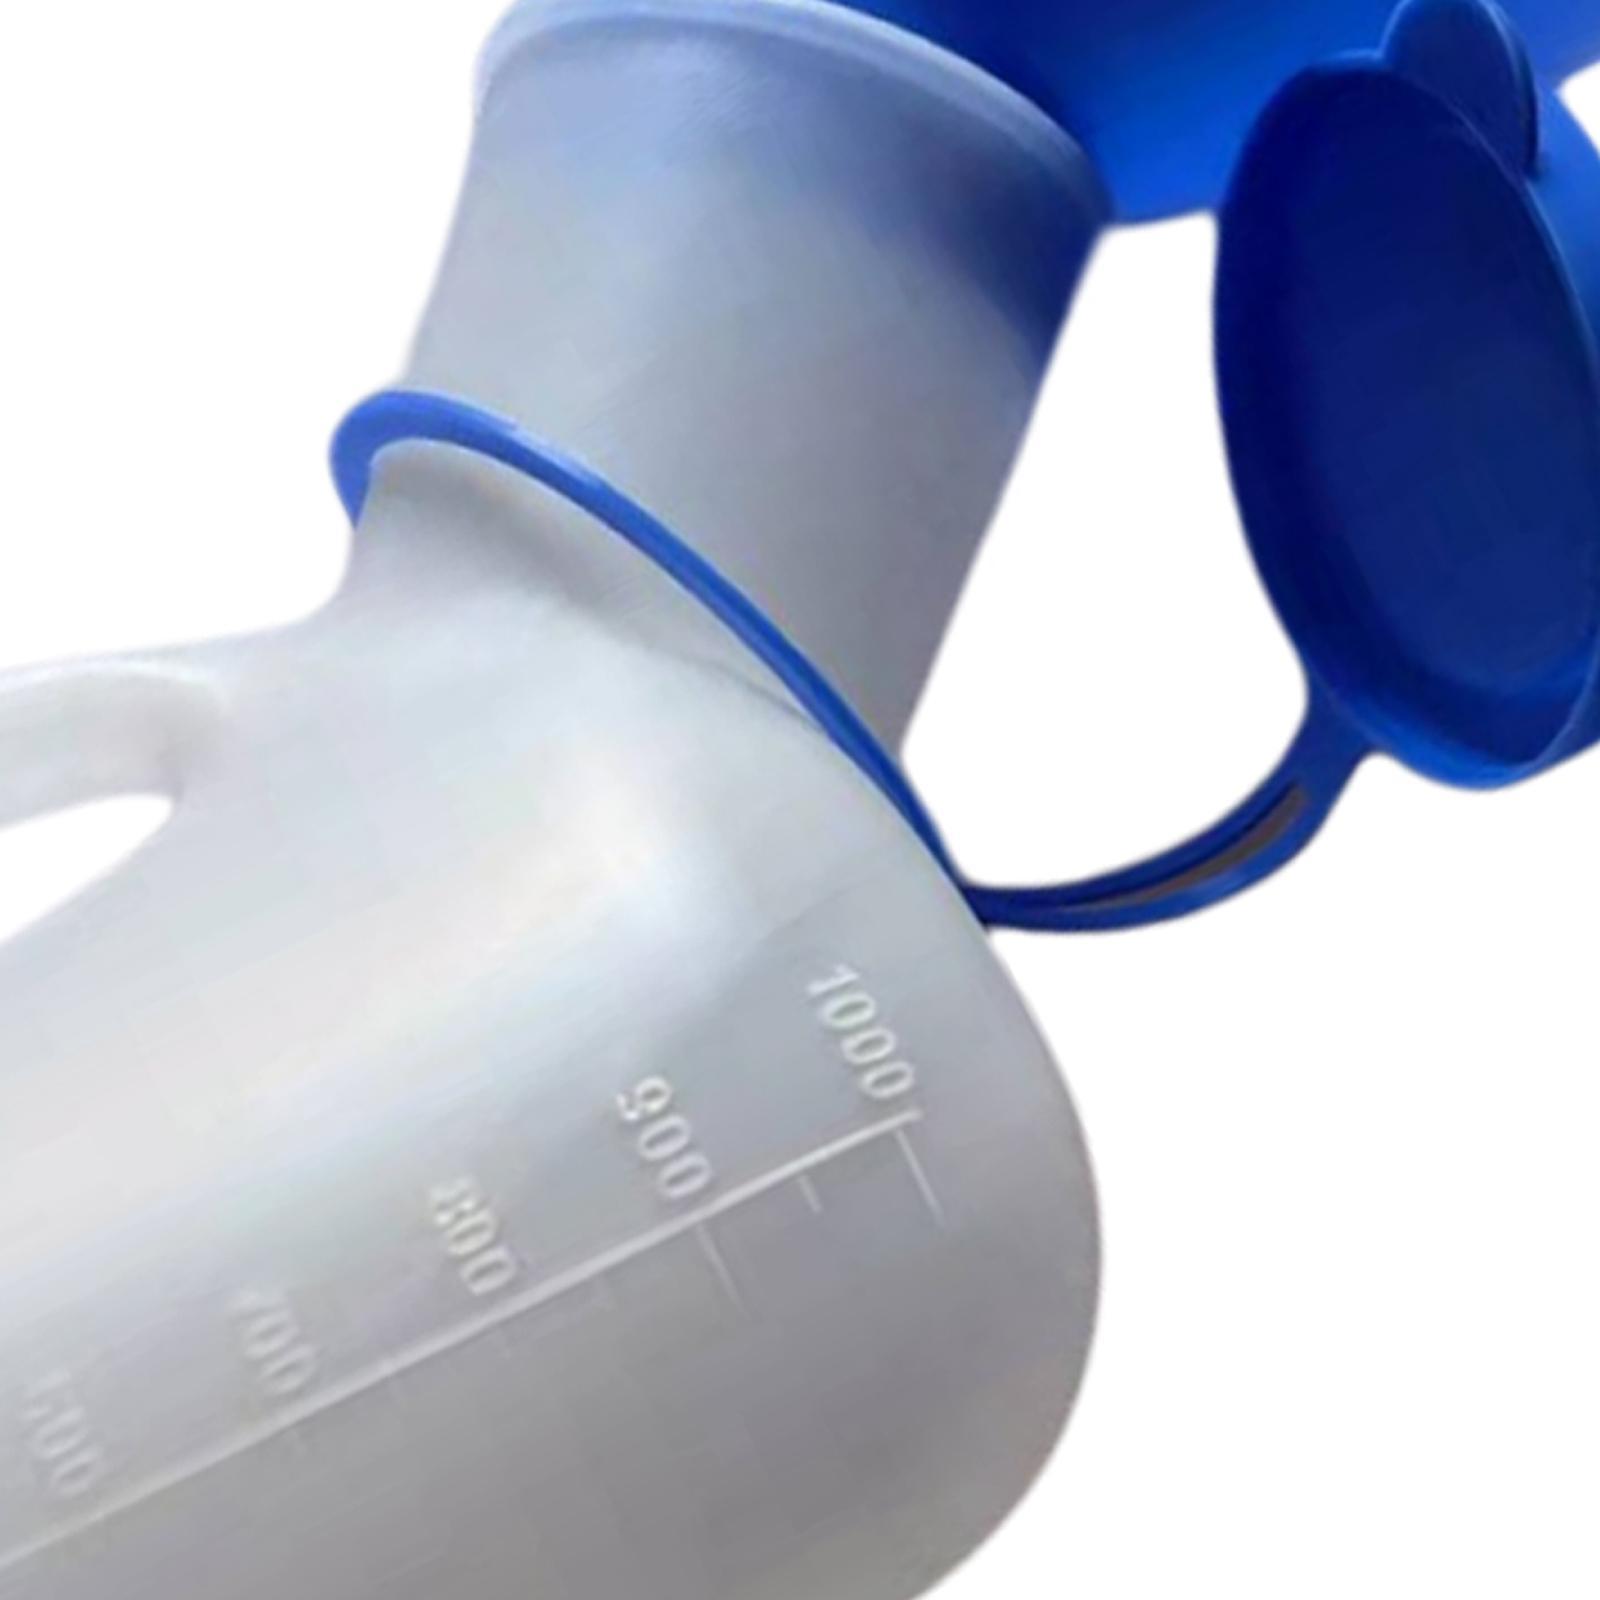 Unisex Potty Urinal 1000ml Bedpans Pee Bottle Outdoor Patient Child